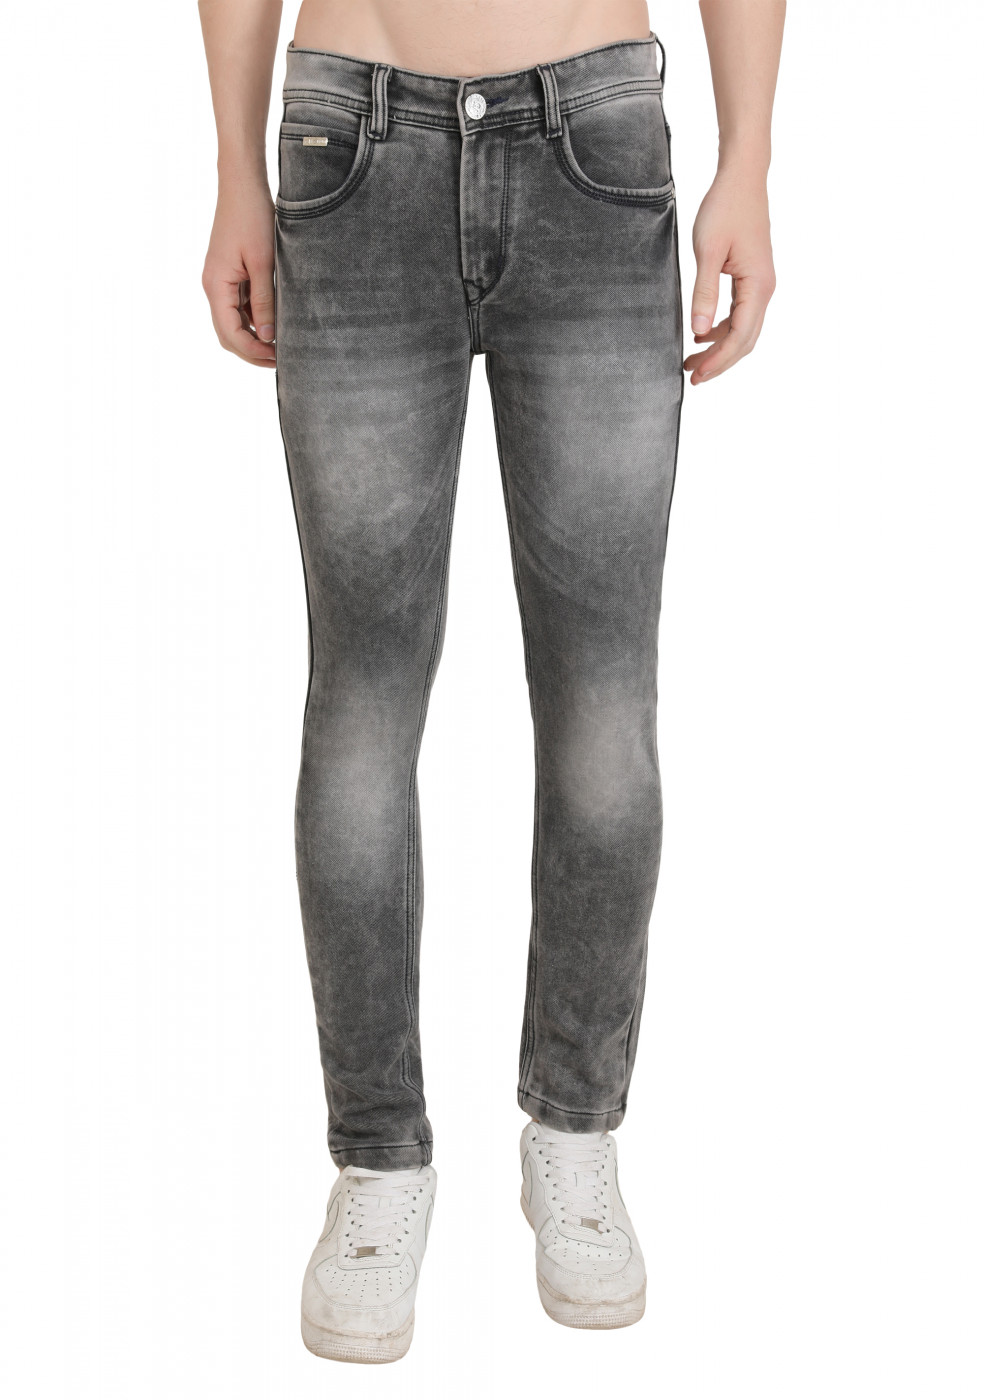 Light Gray Slim Fit Denim Jeans For Men